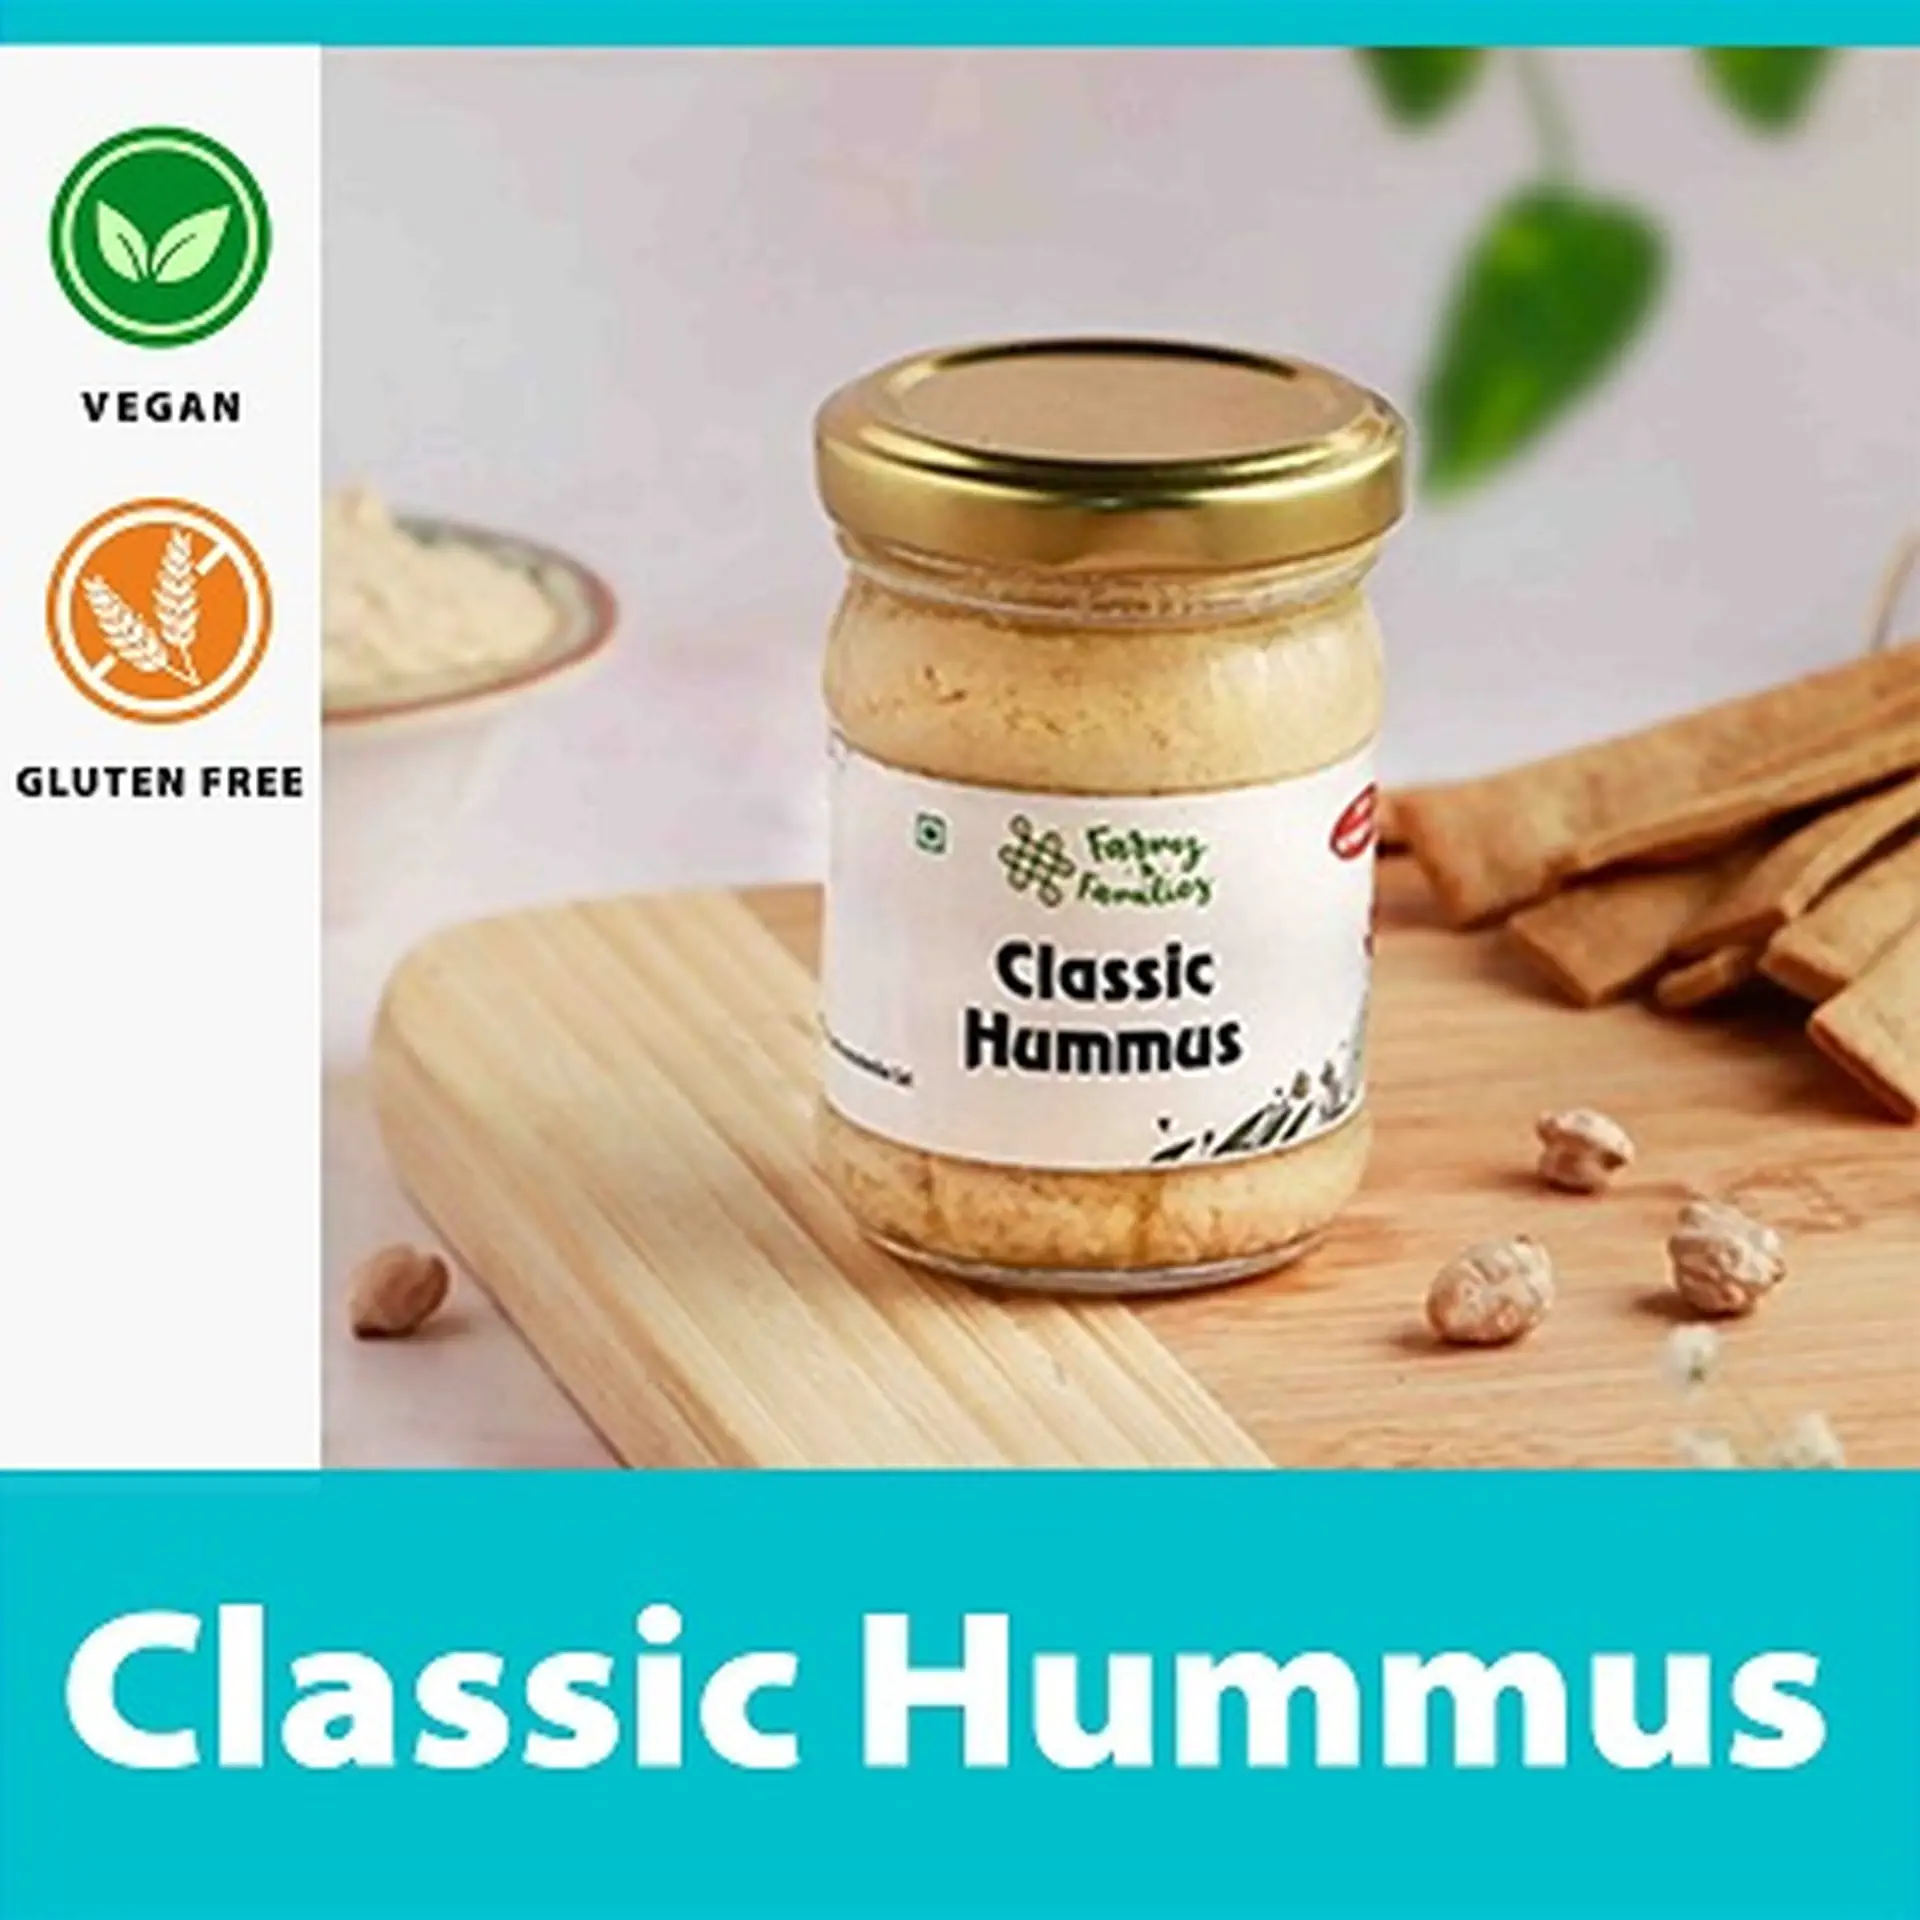 Superfresh Hummus